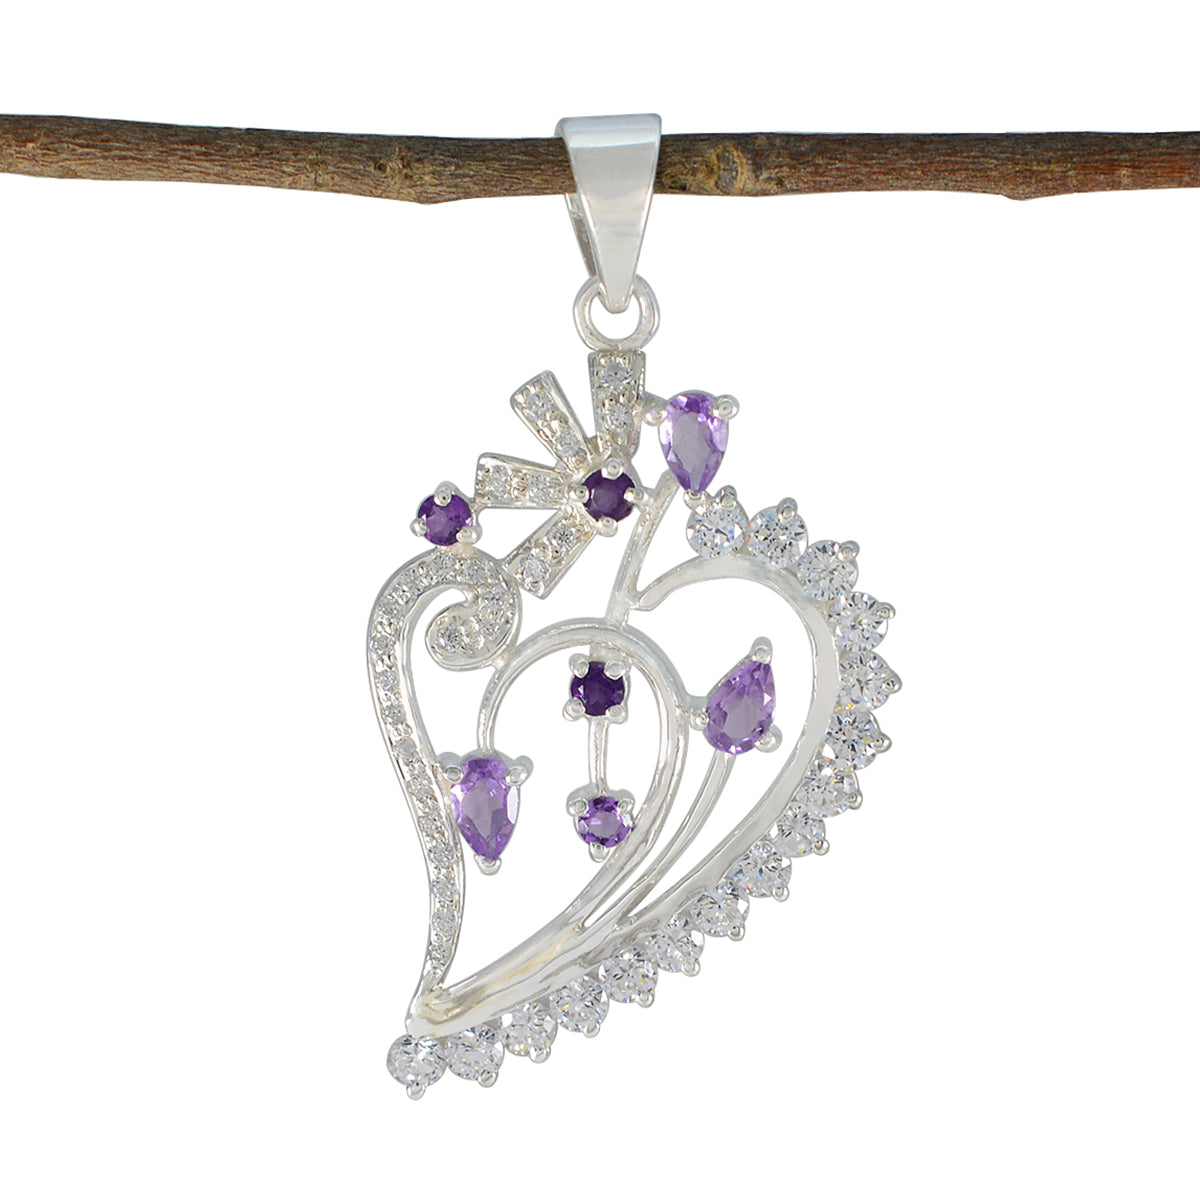 Riyo gemas preciosas colgante de plata de amatista púrpura multifacetado regalo para compromiso